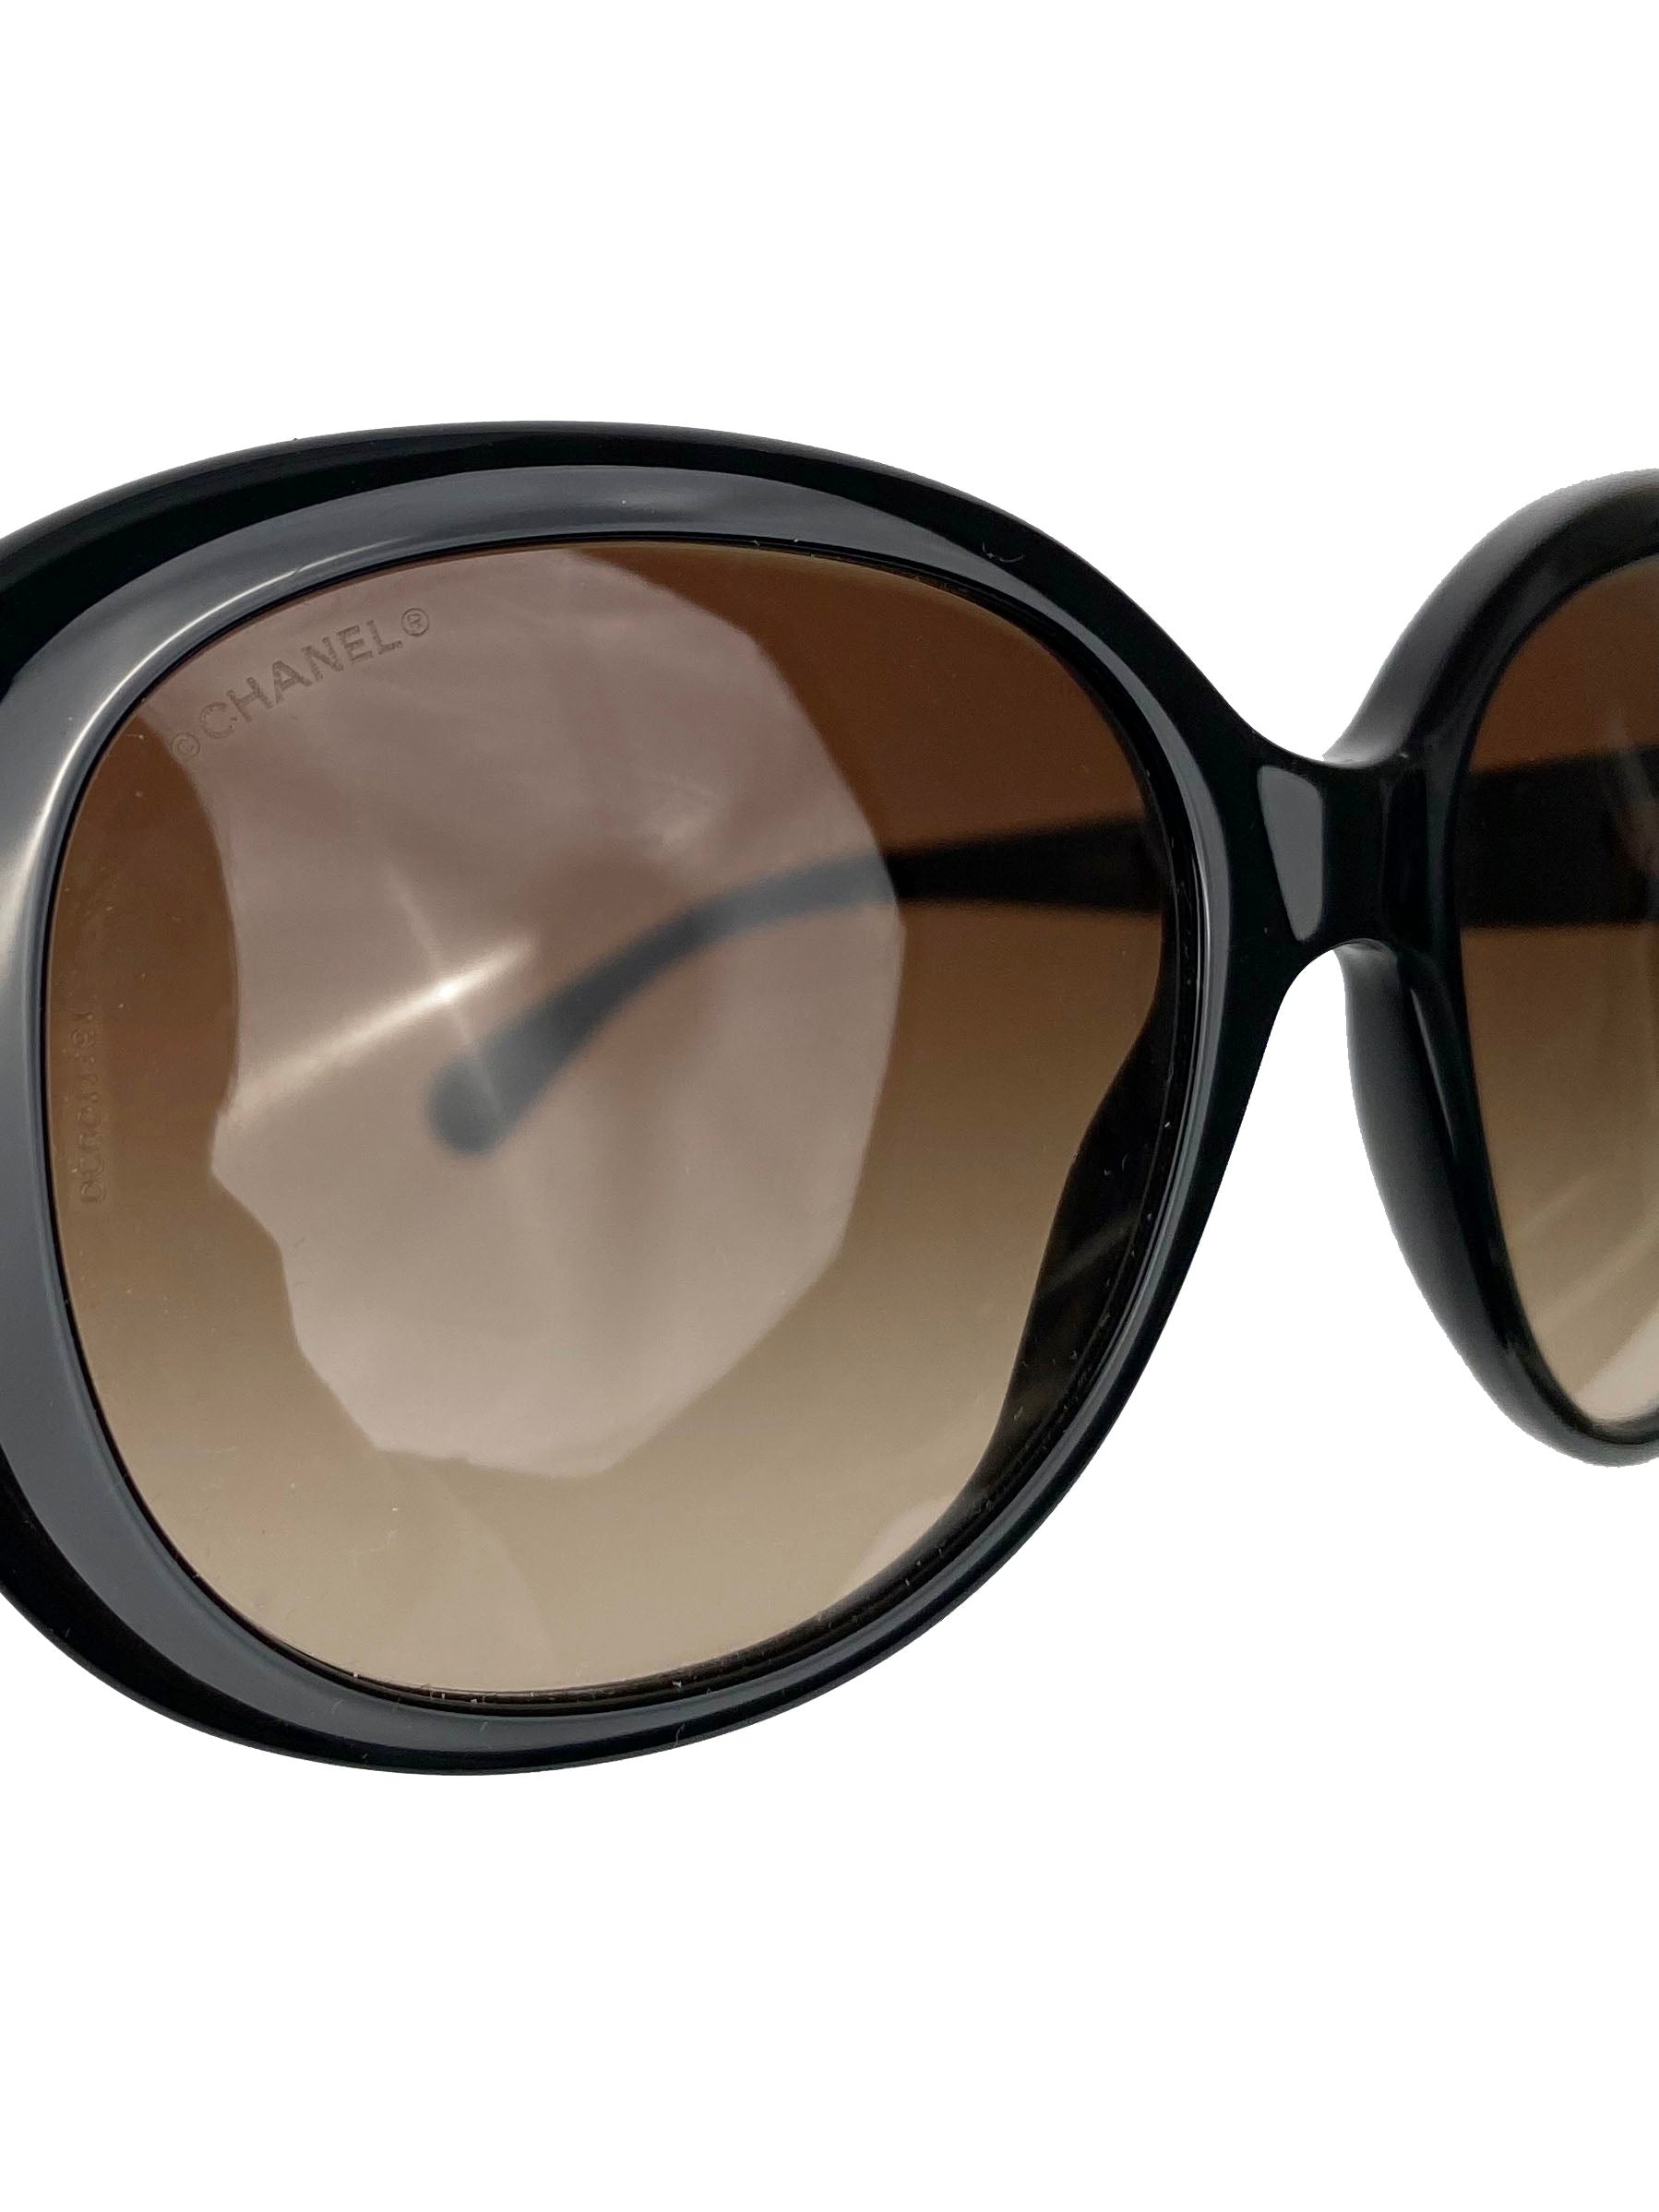 Chanel Black & Beige Butterfly Sunglasses 5312